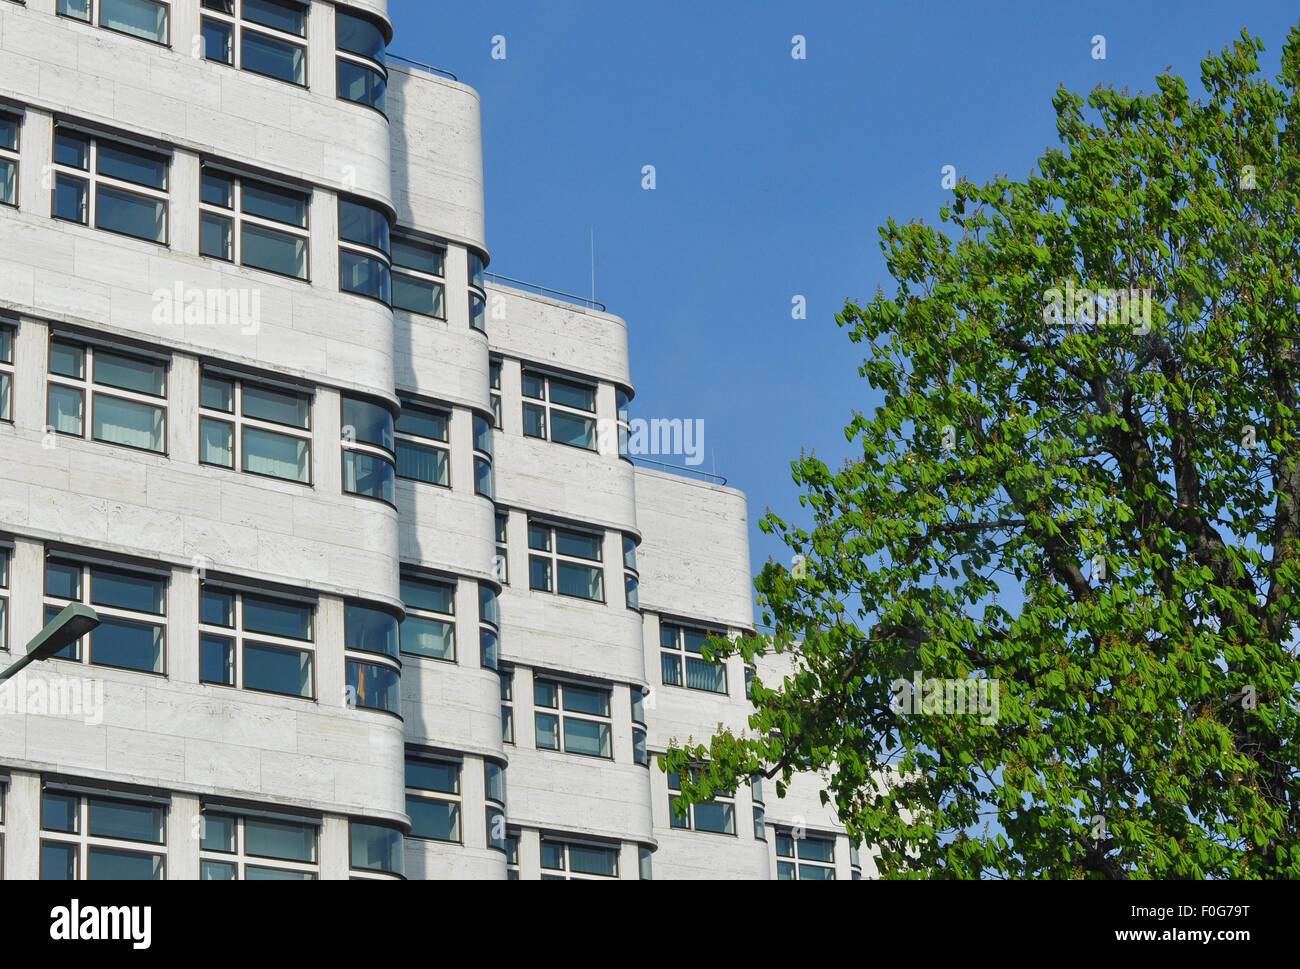 La célèbre Shellhaus, construit par Emil Fahrenkamp en 1931, Berlin, Allemagne. L'un des plus beaux bâtiments de Berlin sous protection monumentale. Banque D'Images